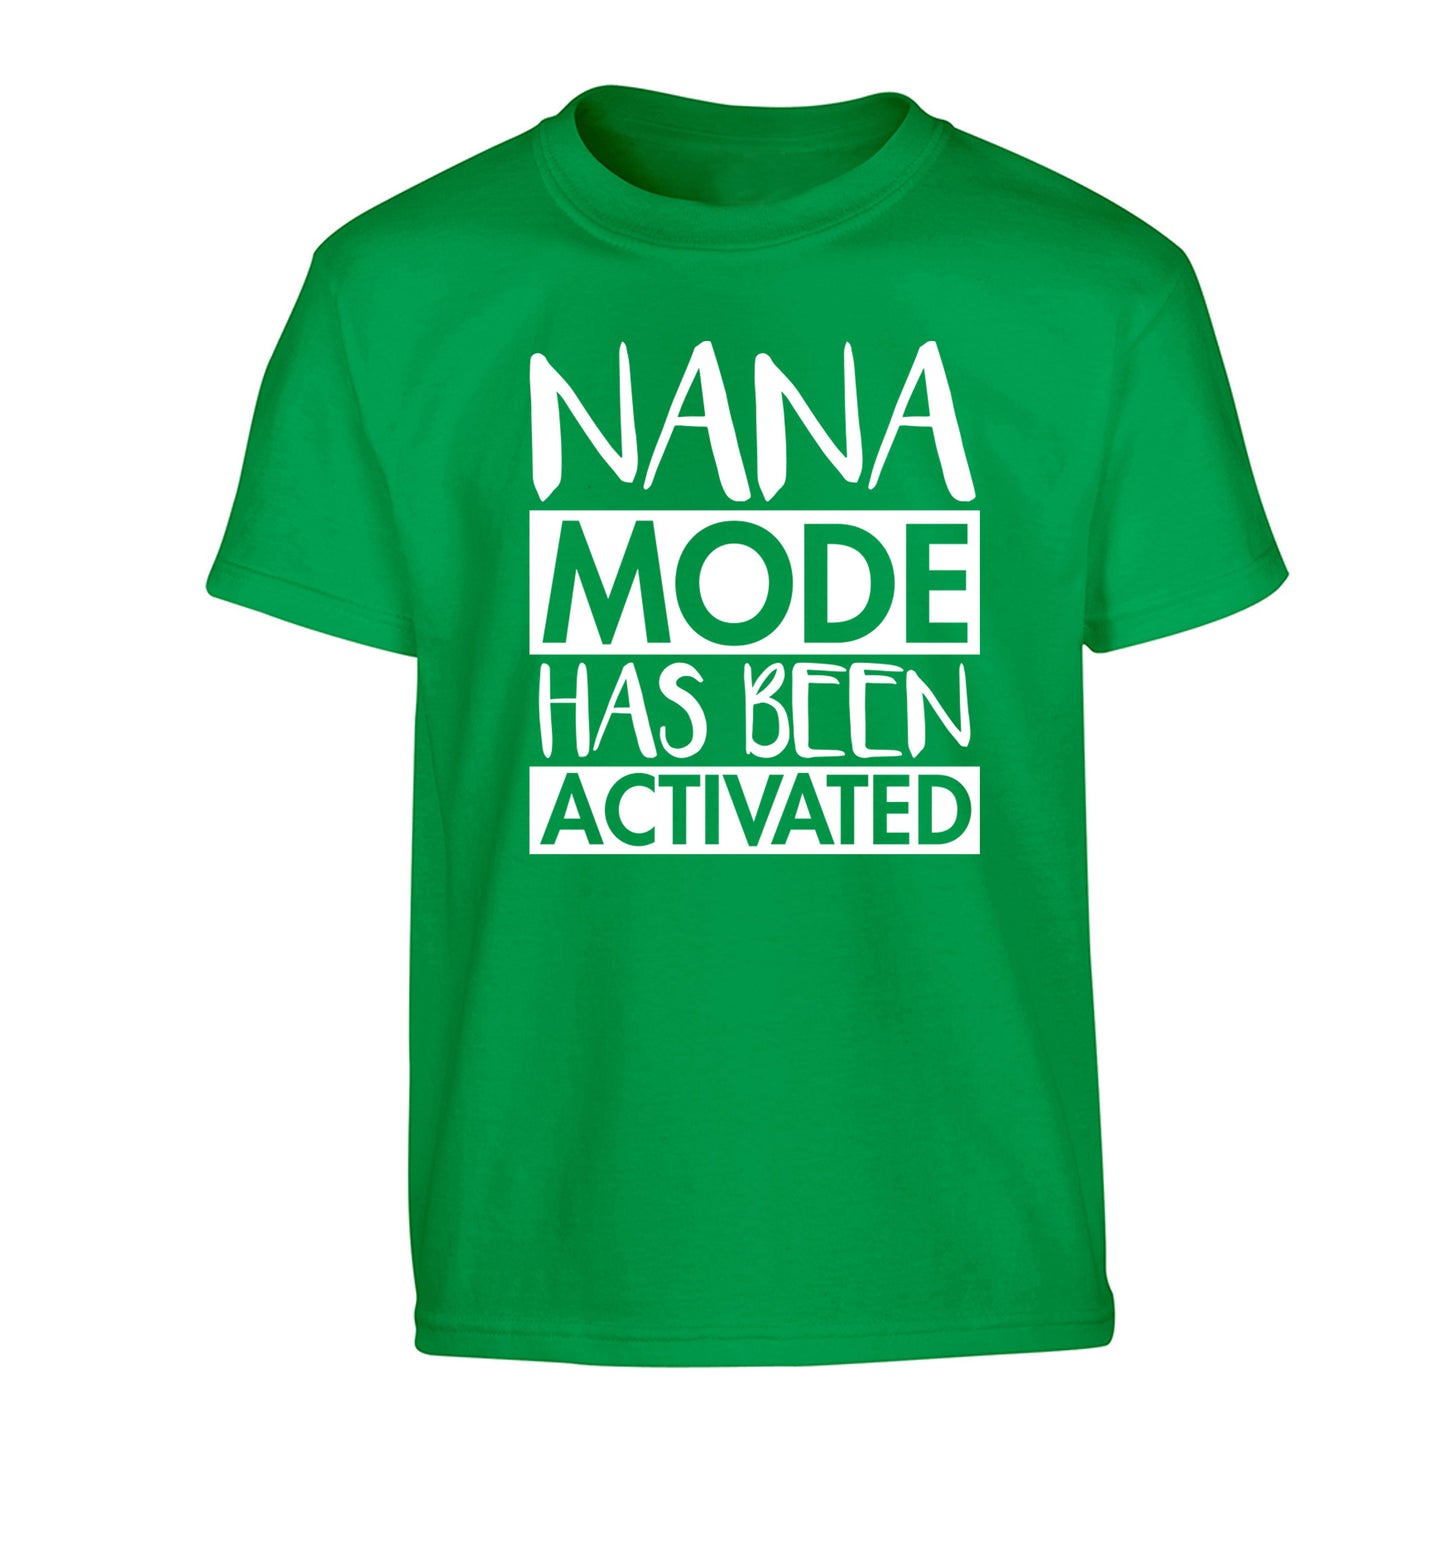 Nana mode activated Children's green Tshirt 12-14 Years